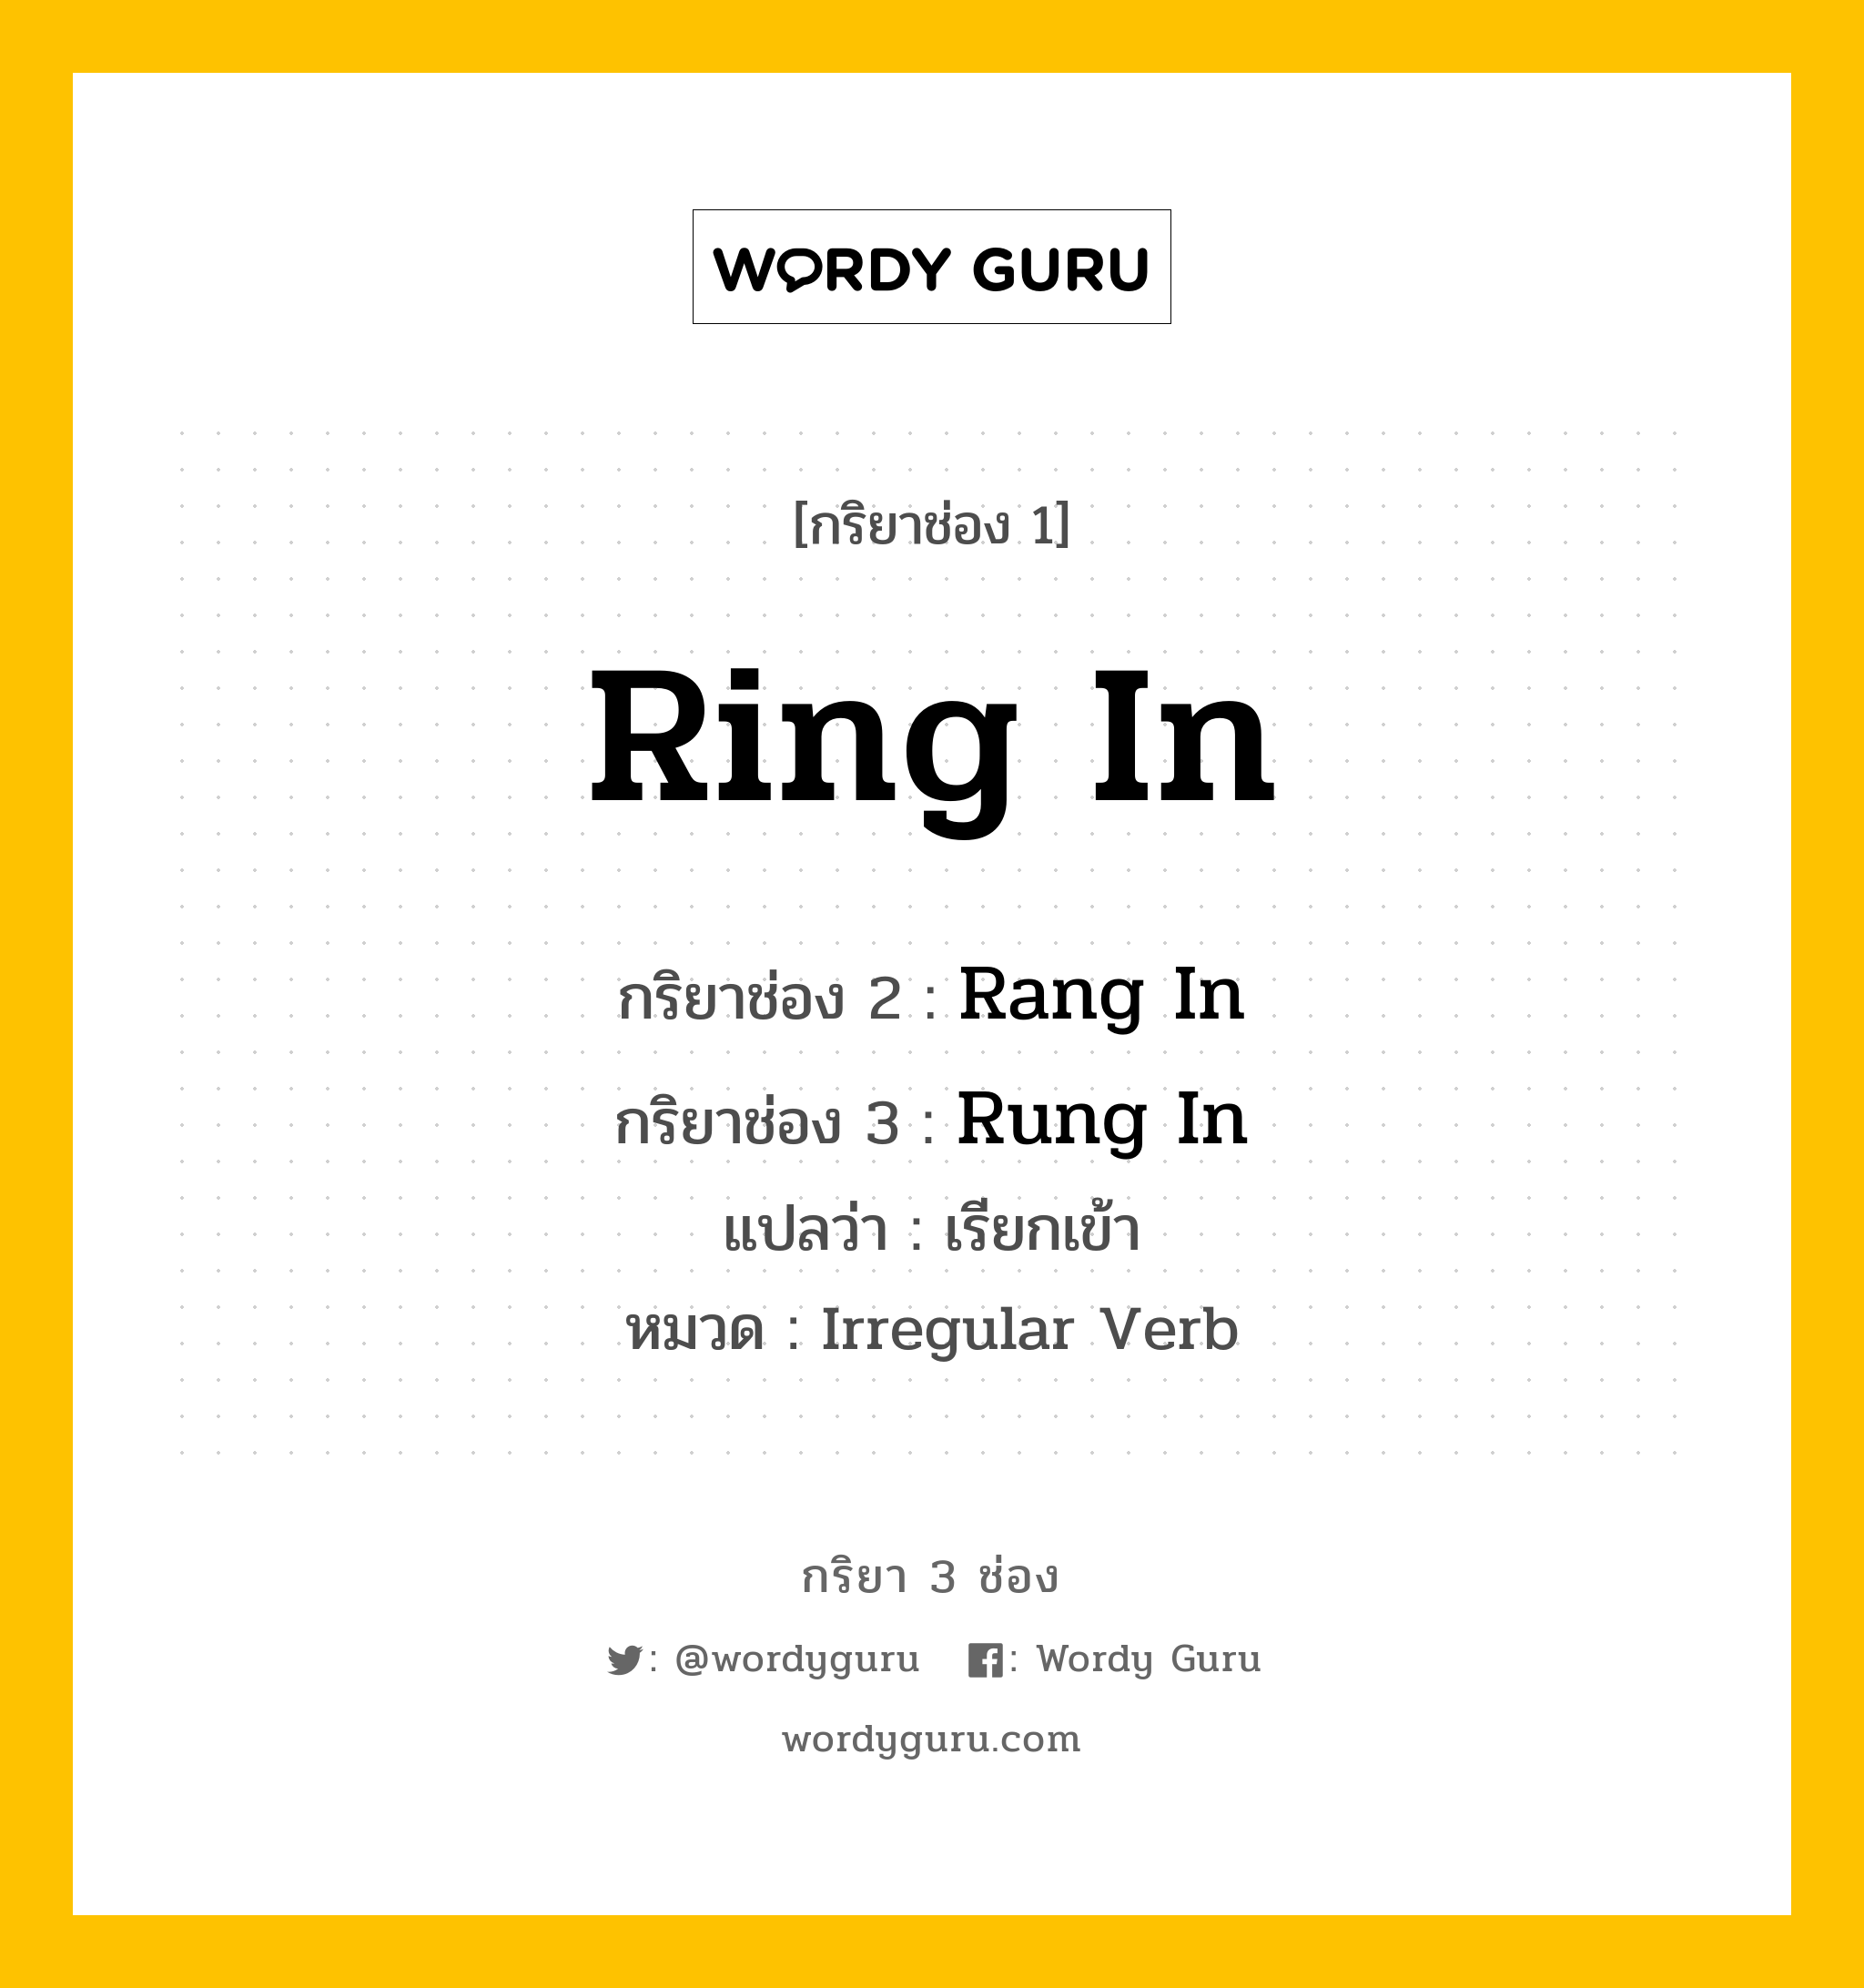 กริยา 3 ช่อง: Ring In ช่อง 2 Ring In ช่อง 3 คืออะไร, กริยาช่อง 1 Ring In กริยาช่อง 2 Rang In กริยาช่อง 3 Rung In แปลว่า เรียกเข้า หมวด Irregular Verb หมวด Irregular Verb